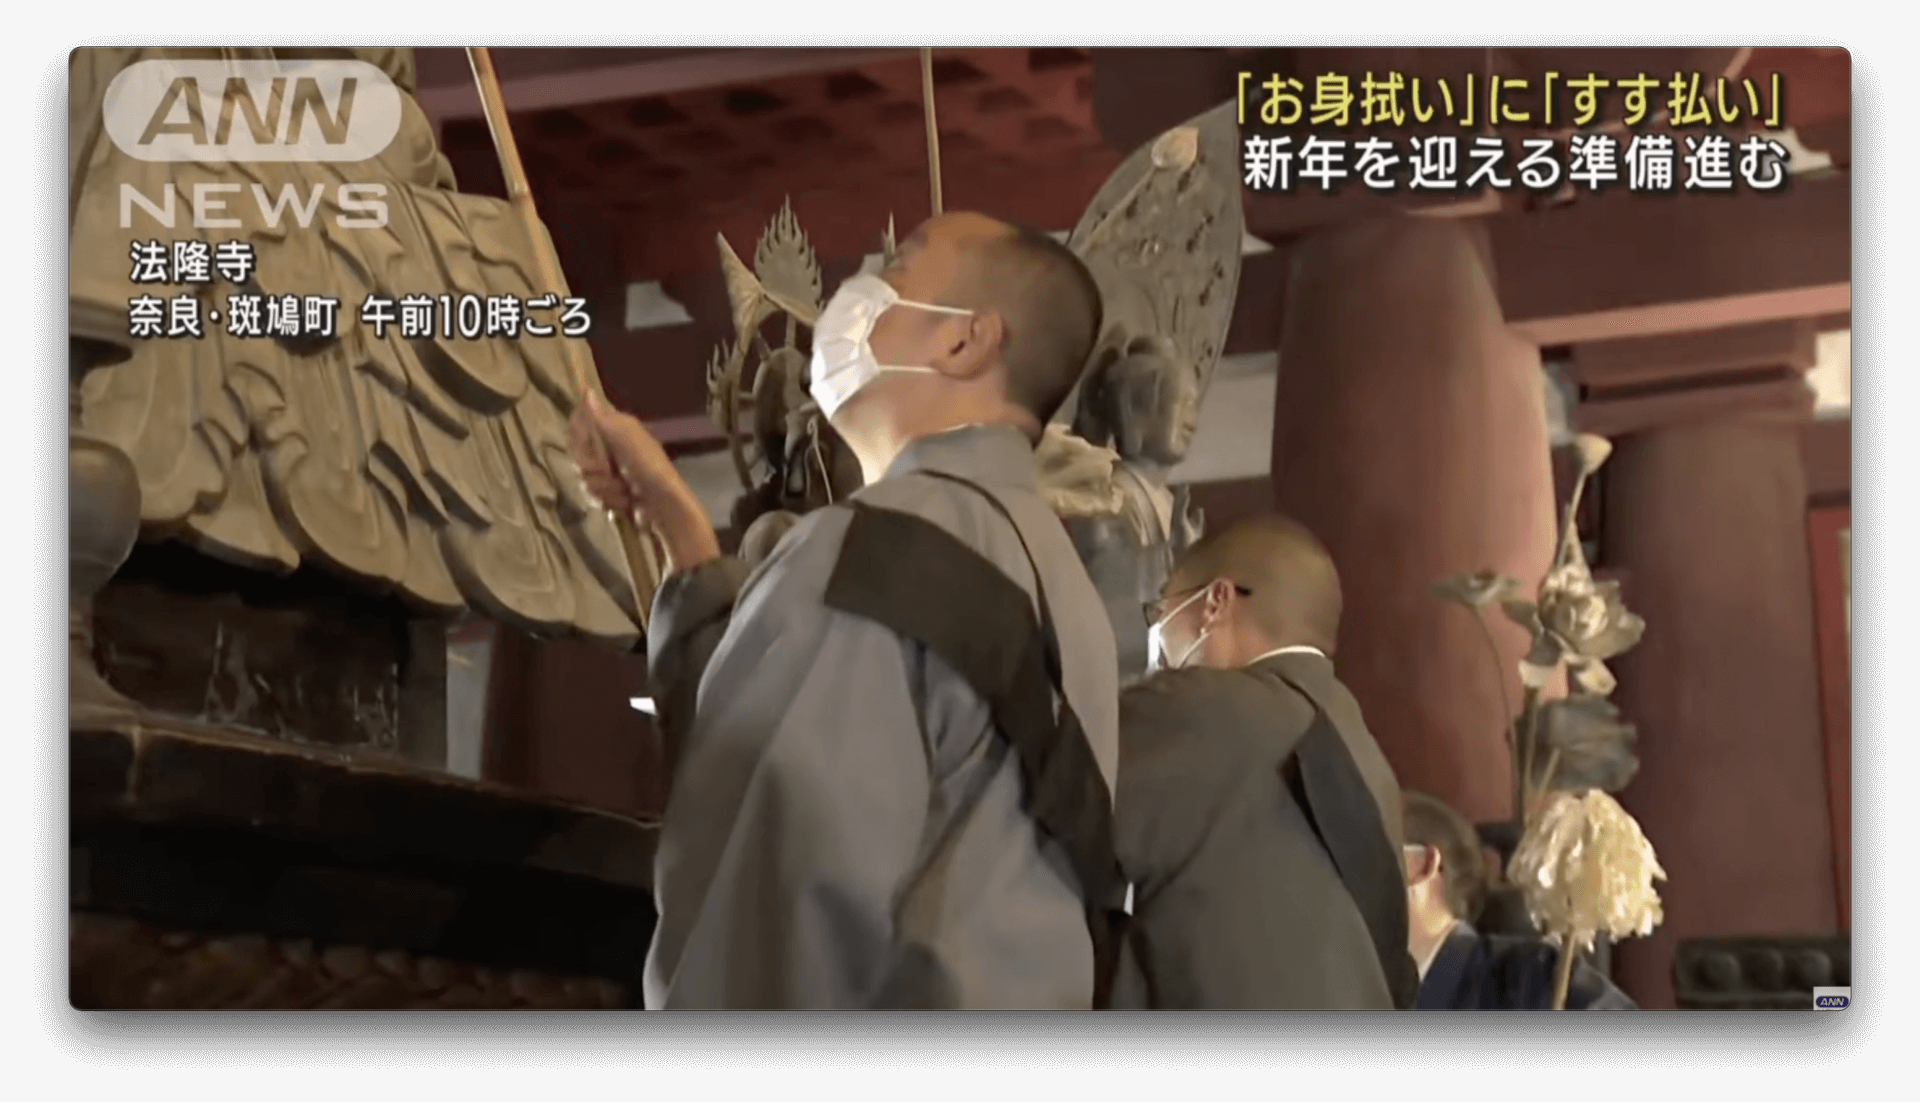 Tradicional limpeza anual dos Budas, têm monges usando máscara no Japão